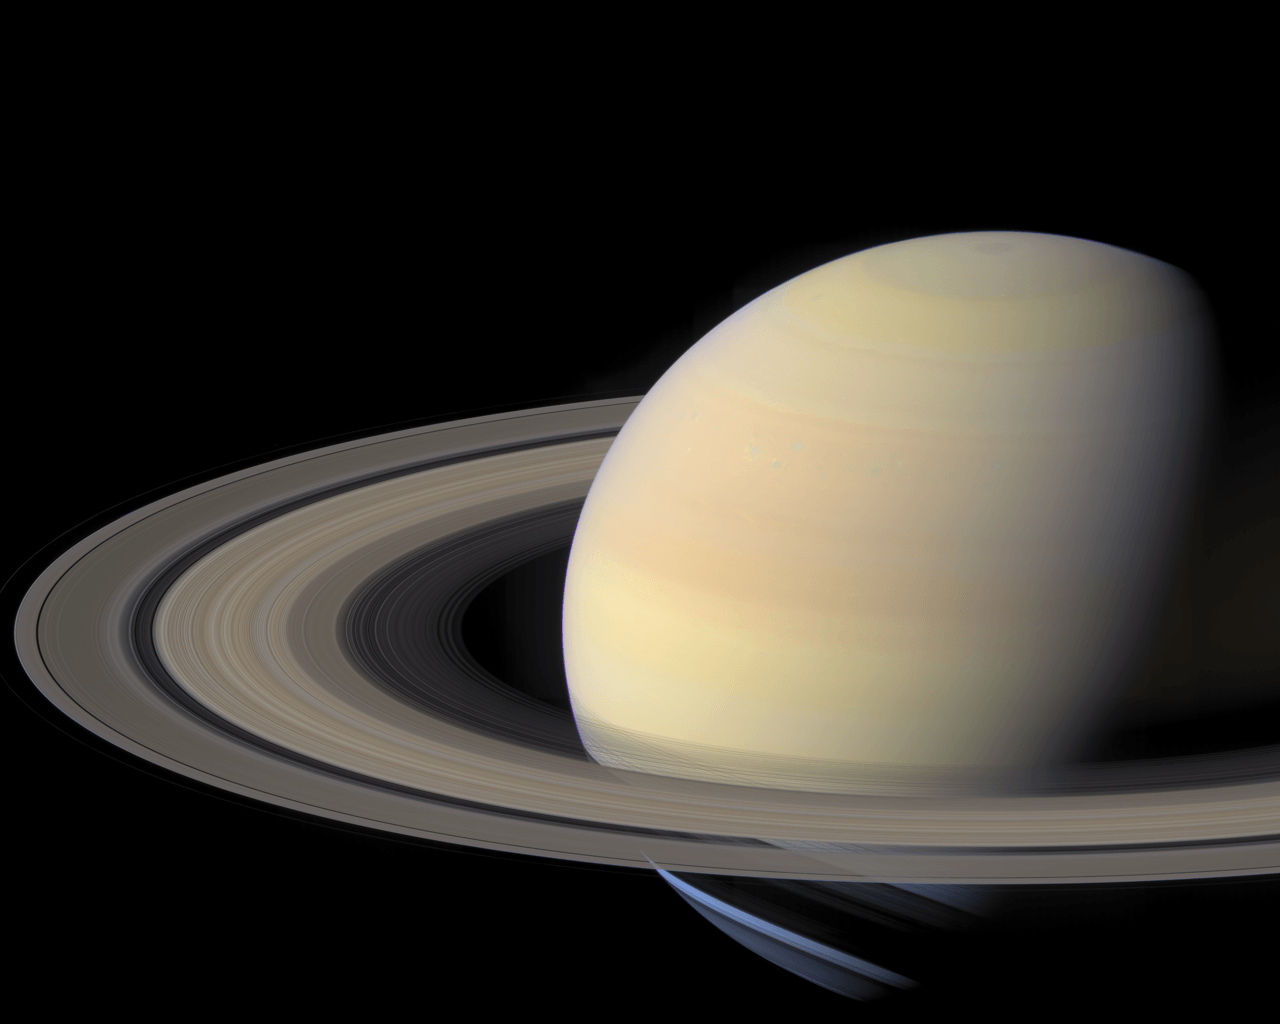 Saturn Wallpaper